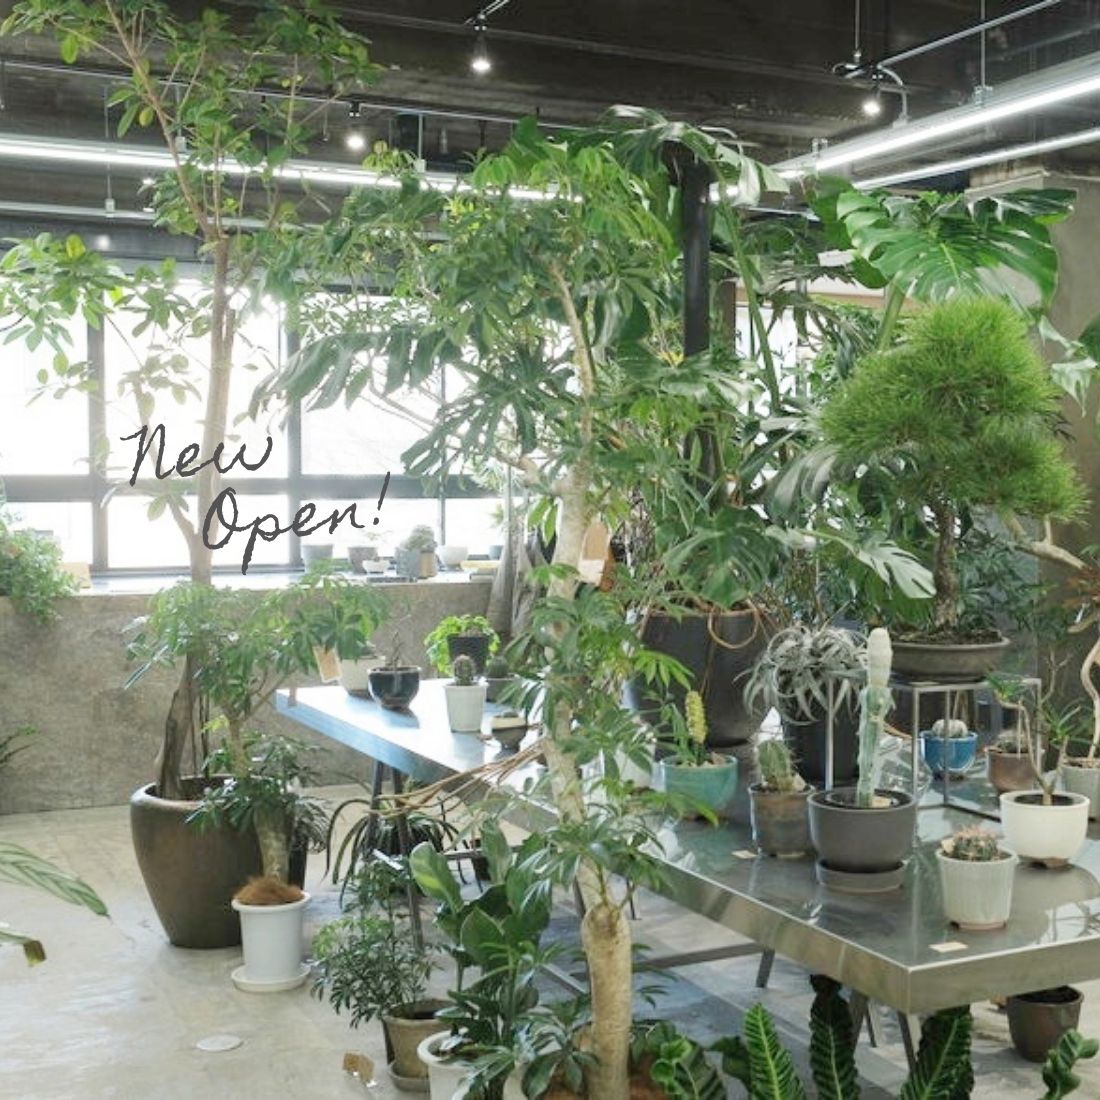 グリーンショップ Atelier En S アトリエ エンズ の空間に癒される 自分好みの観葉植物と出会える場 名古屋 丸の内 日刊ケリー